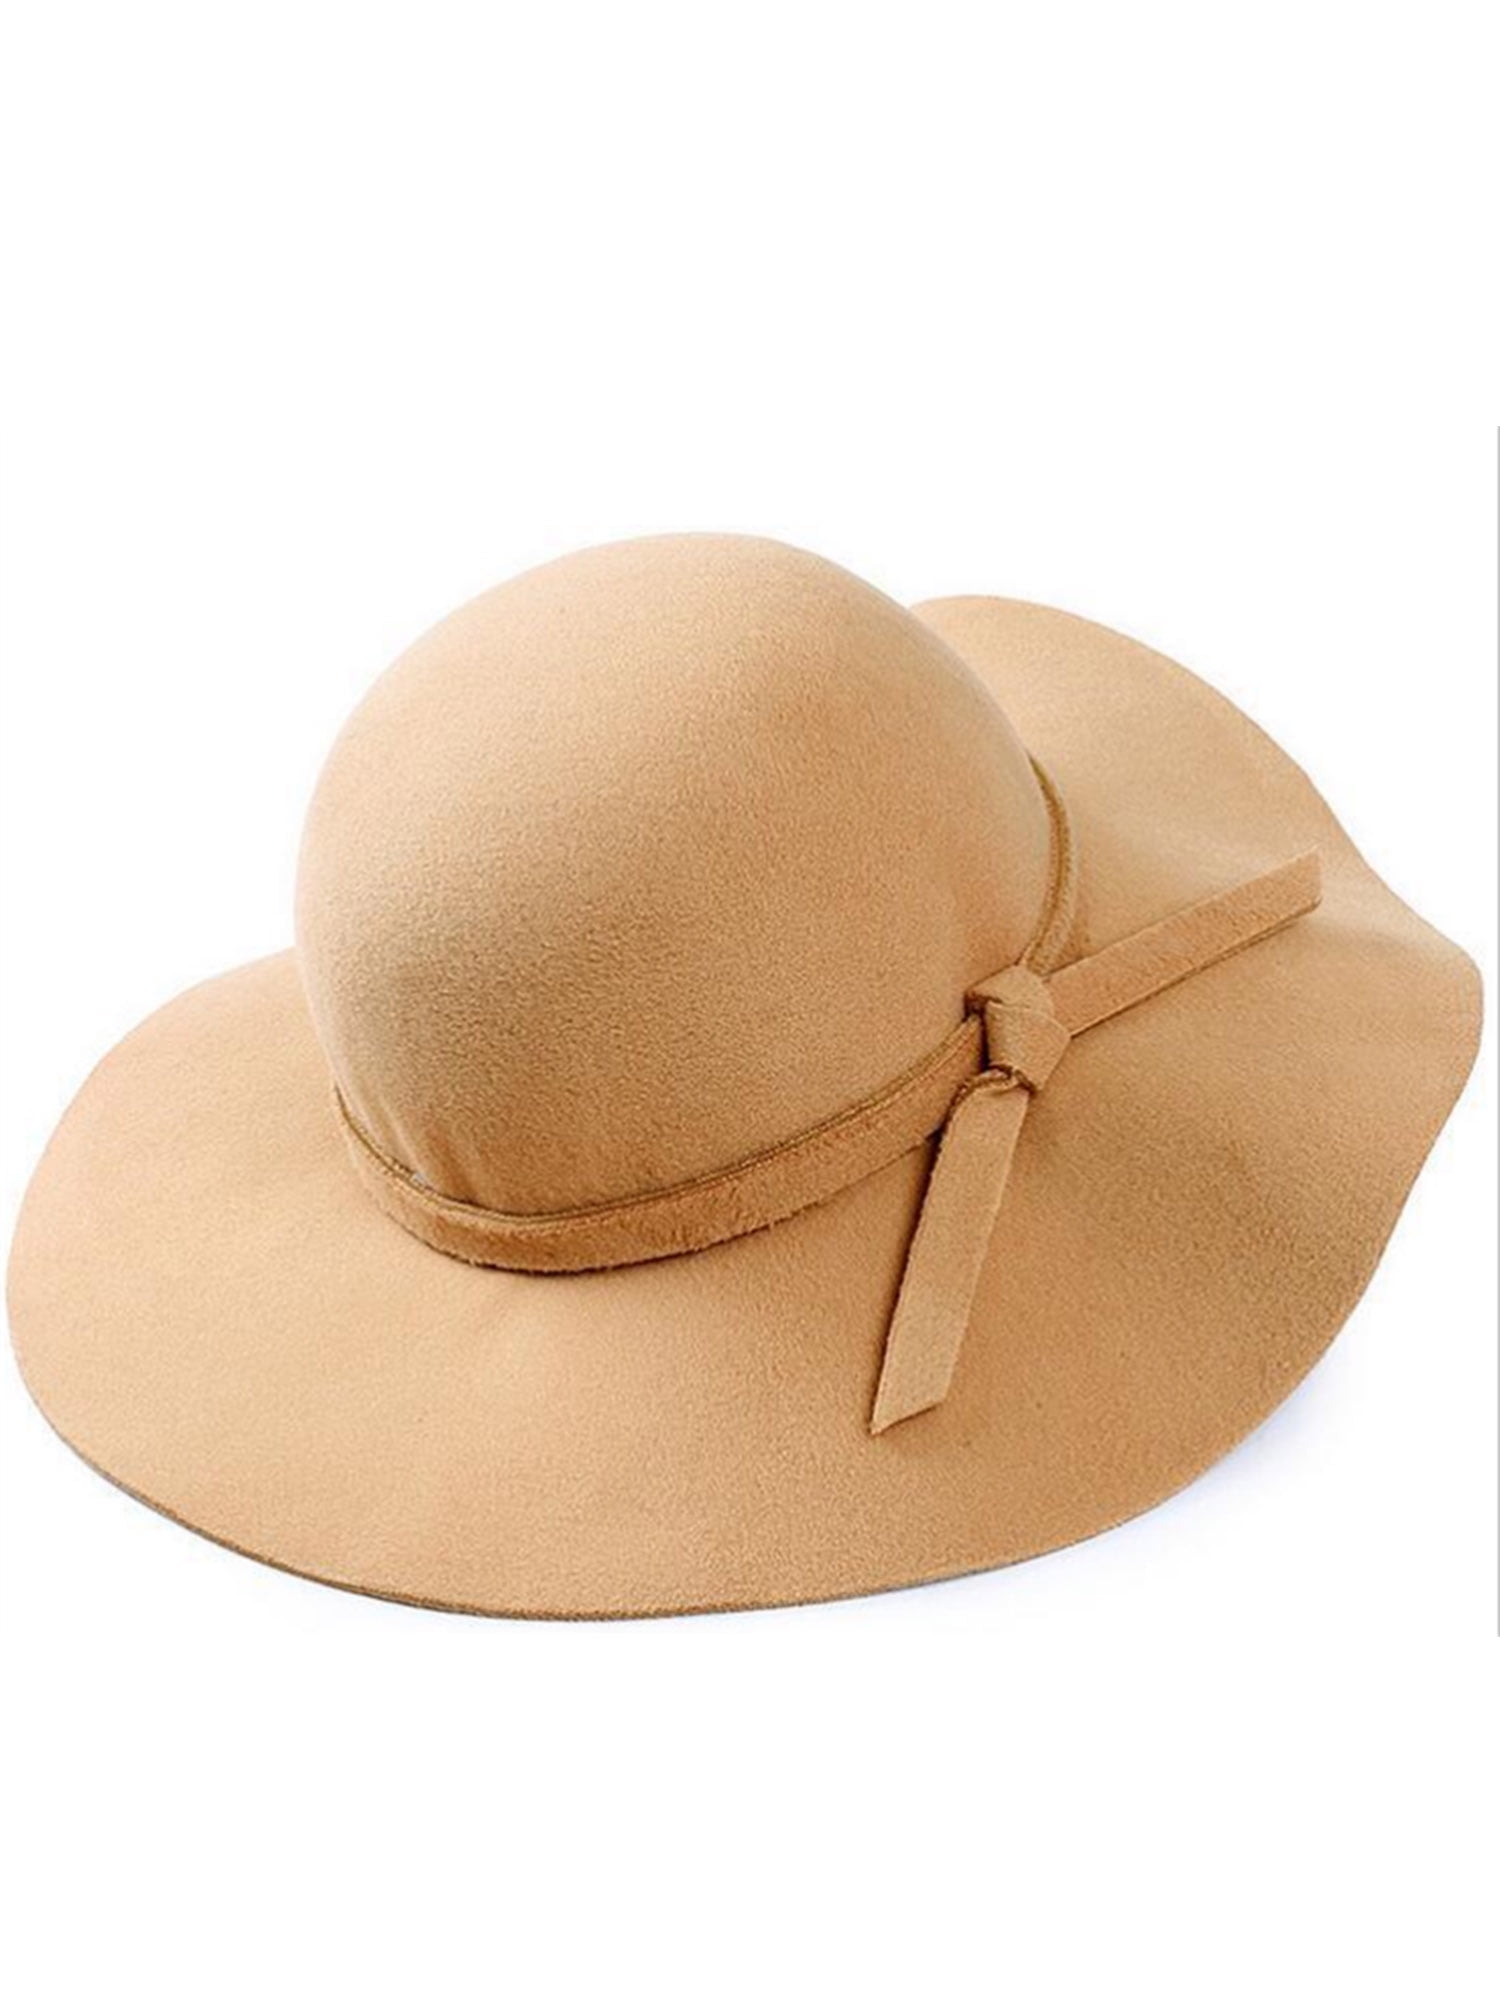 Women Vintage Wide Brim Floppy Warm Felt Hat Trilby Bowler 6 Colors Fishing  Hat 